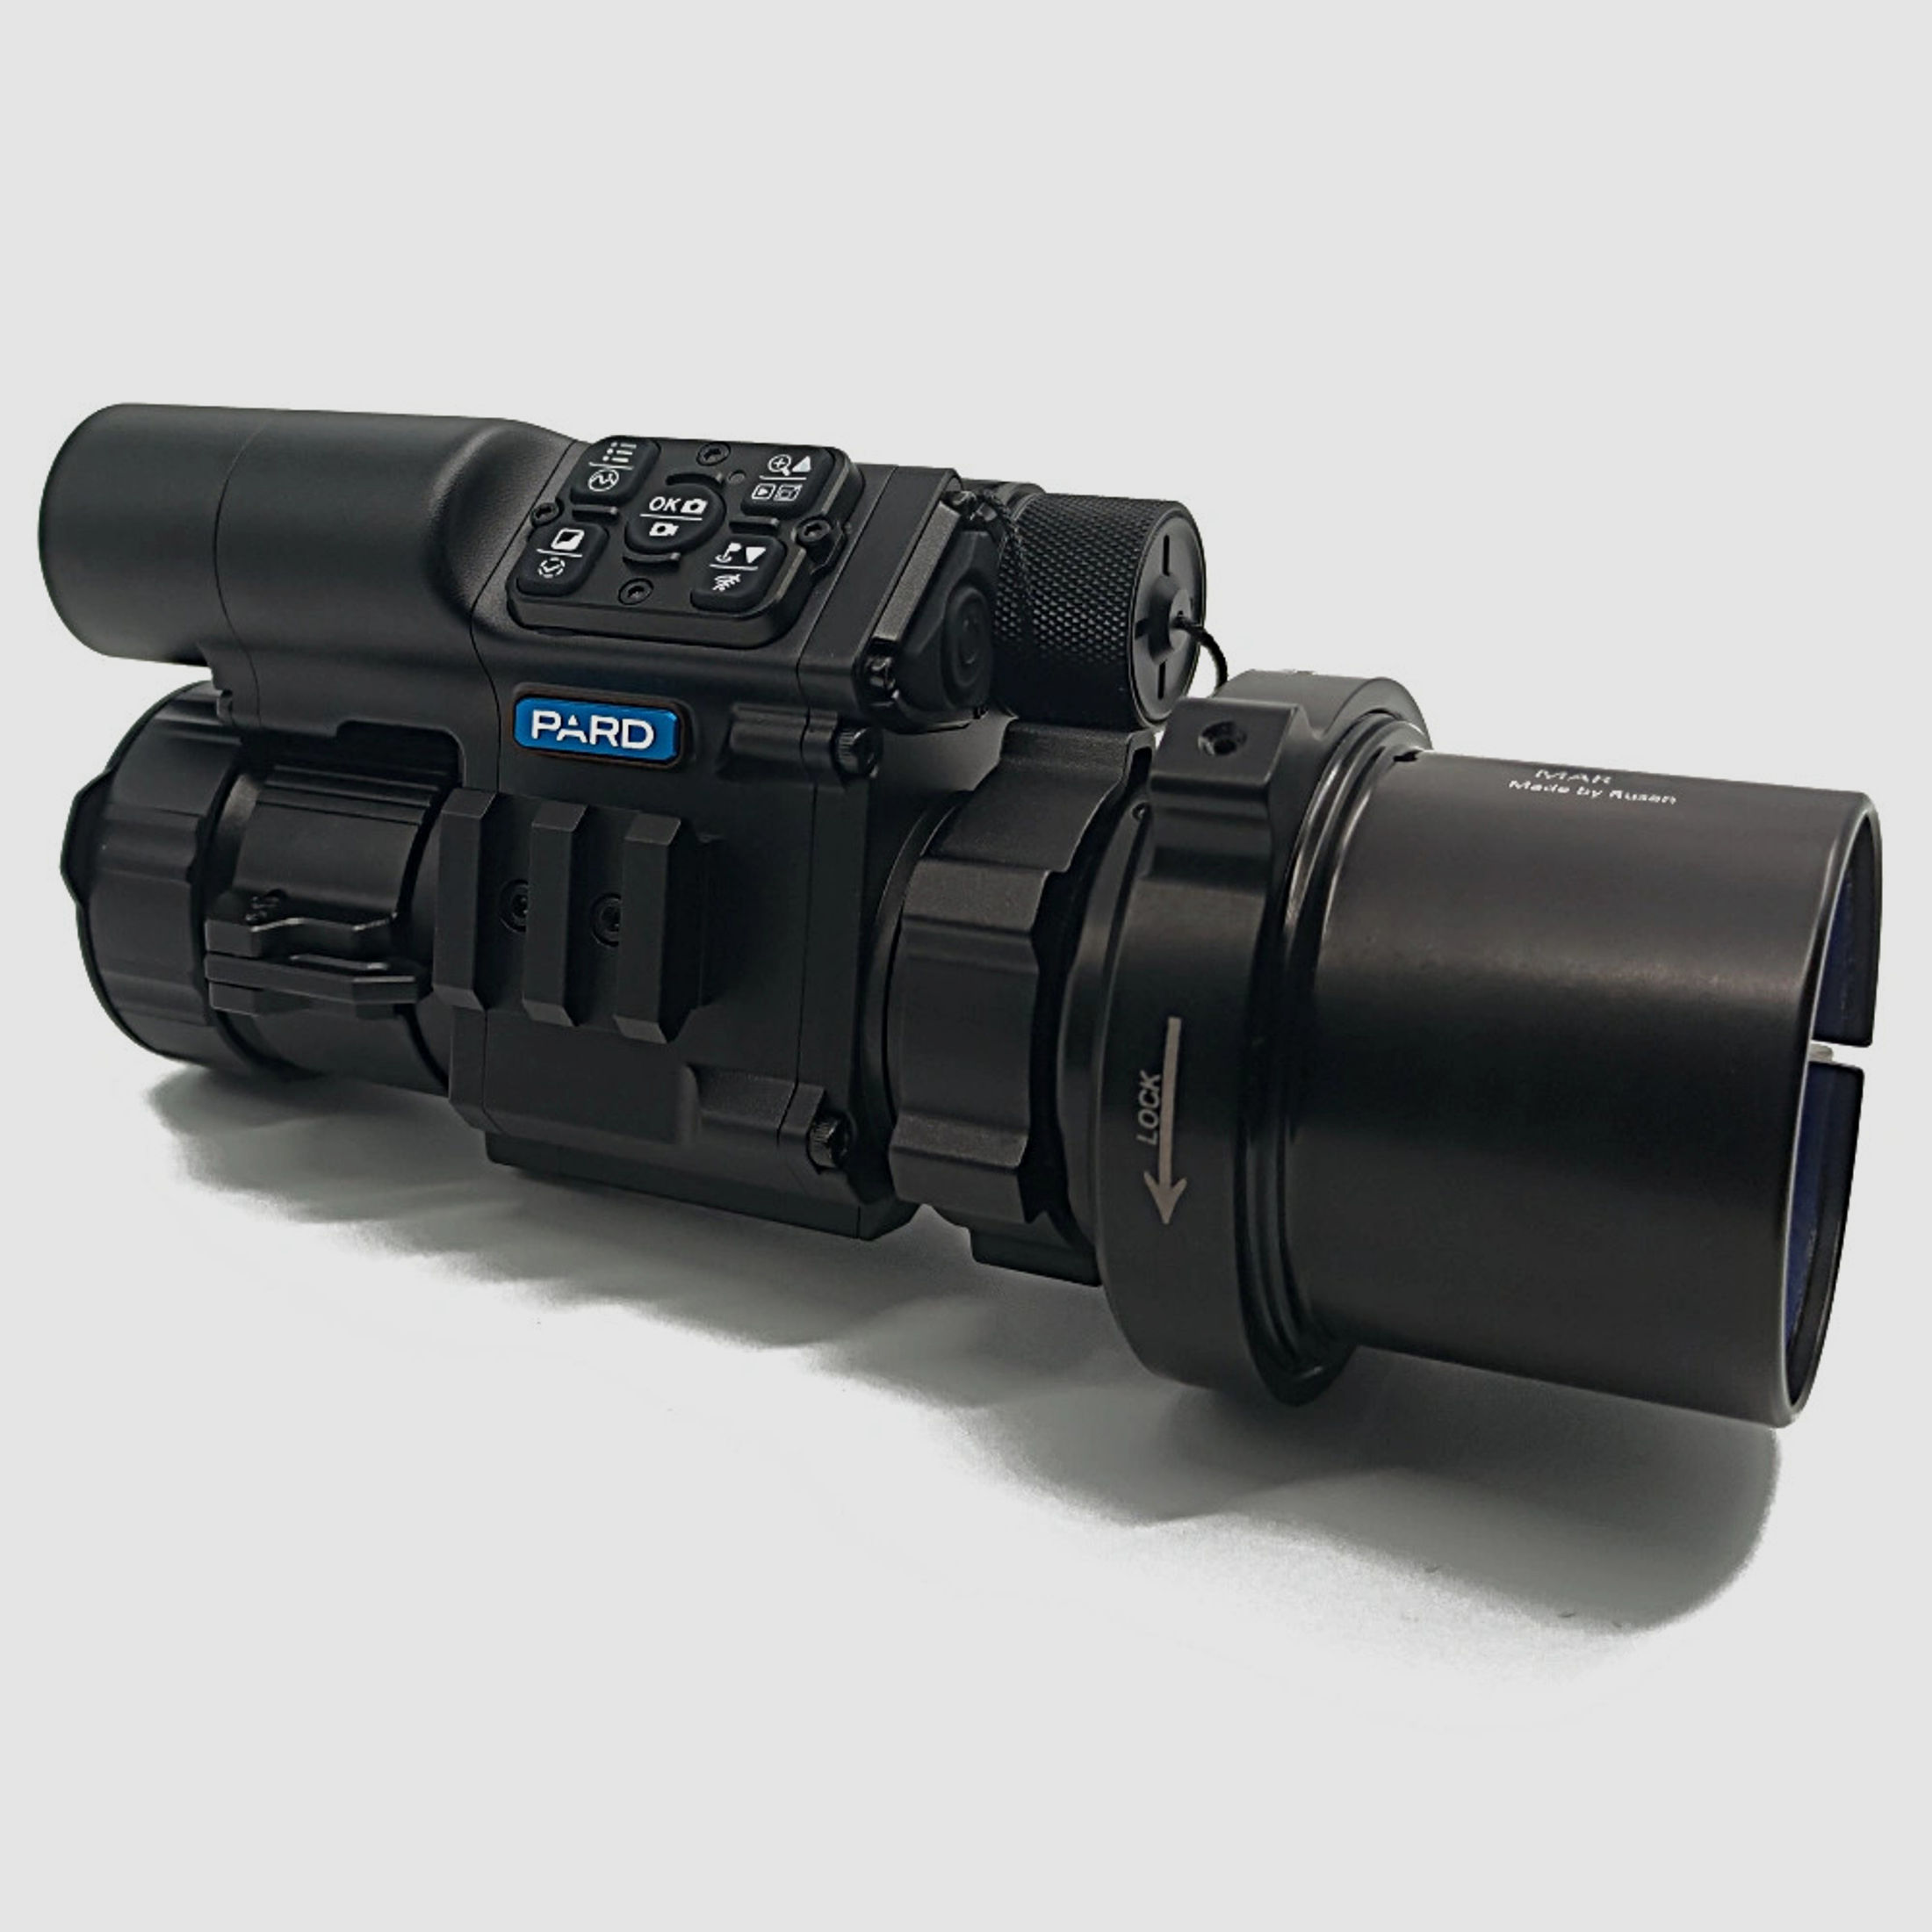 PARD FD1 Nachtsicht 3 in 1 Vorsatz, Monokular & Zielfernrohr - 940 nm mit LRF 44 mm RUSAN MAR + RUSAN MCR